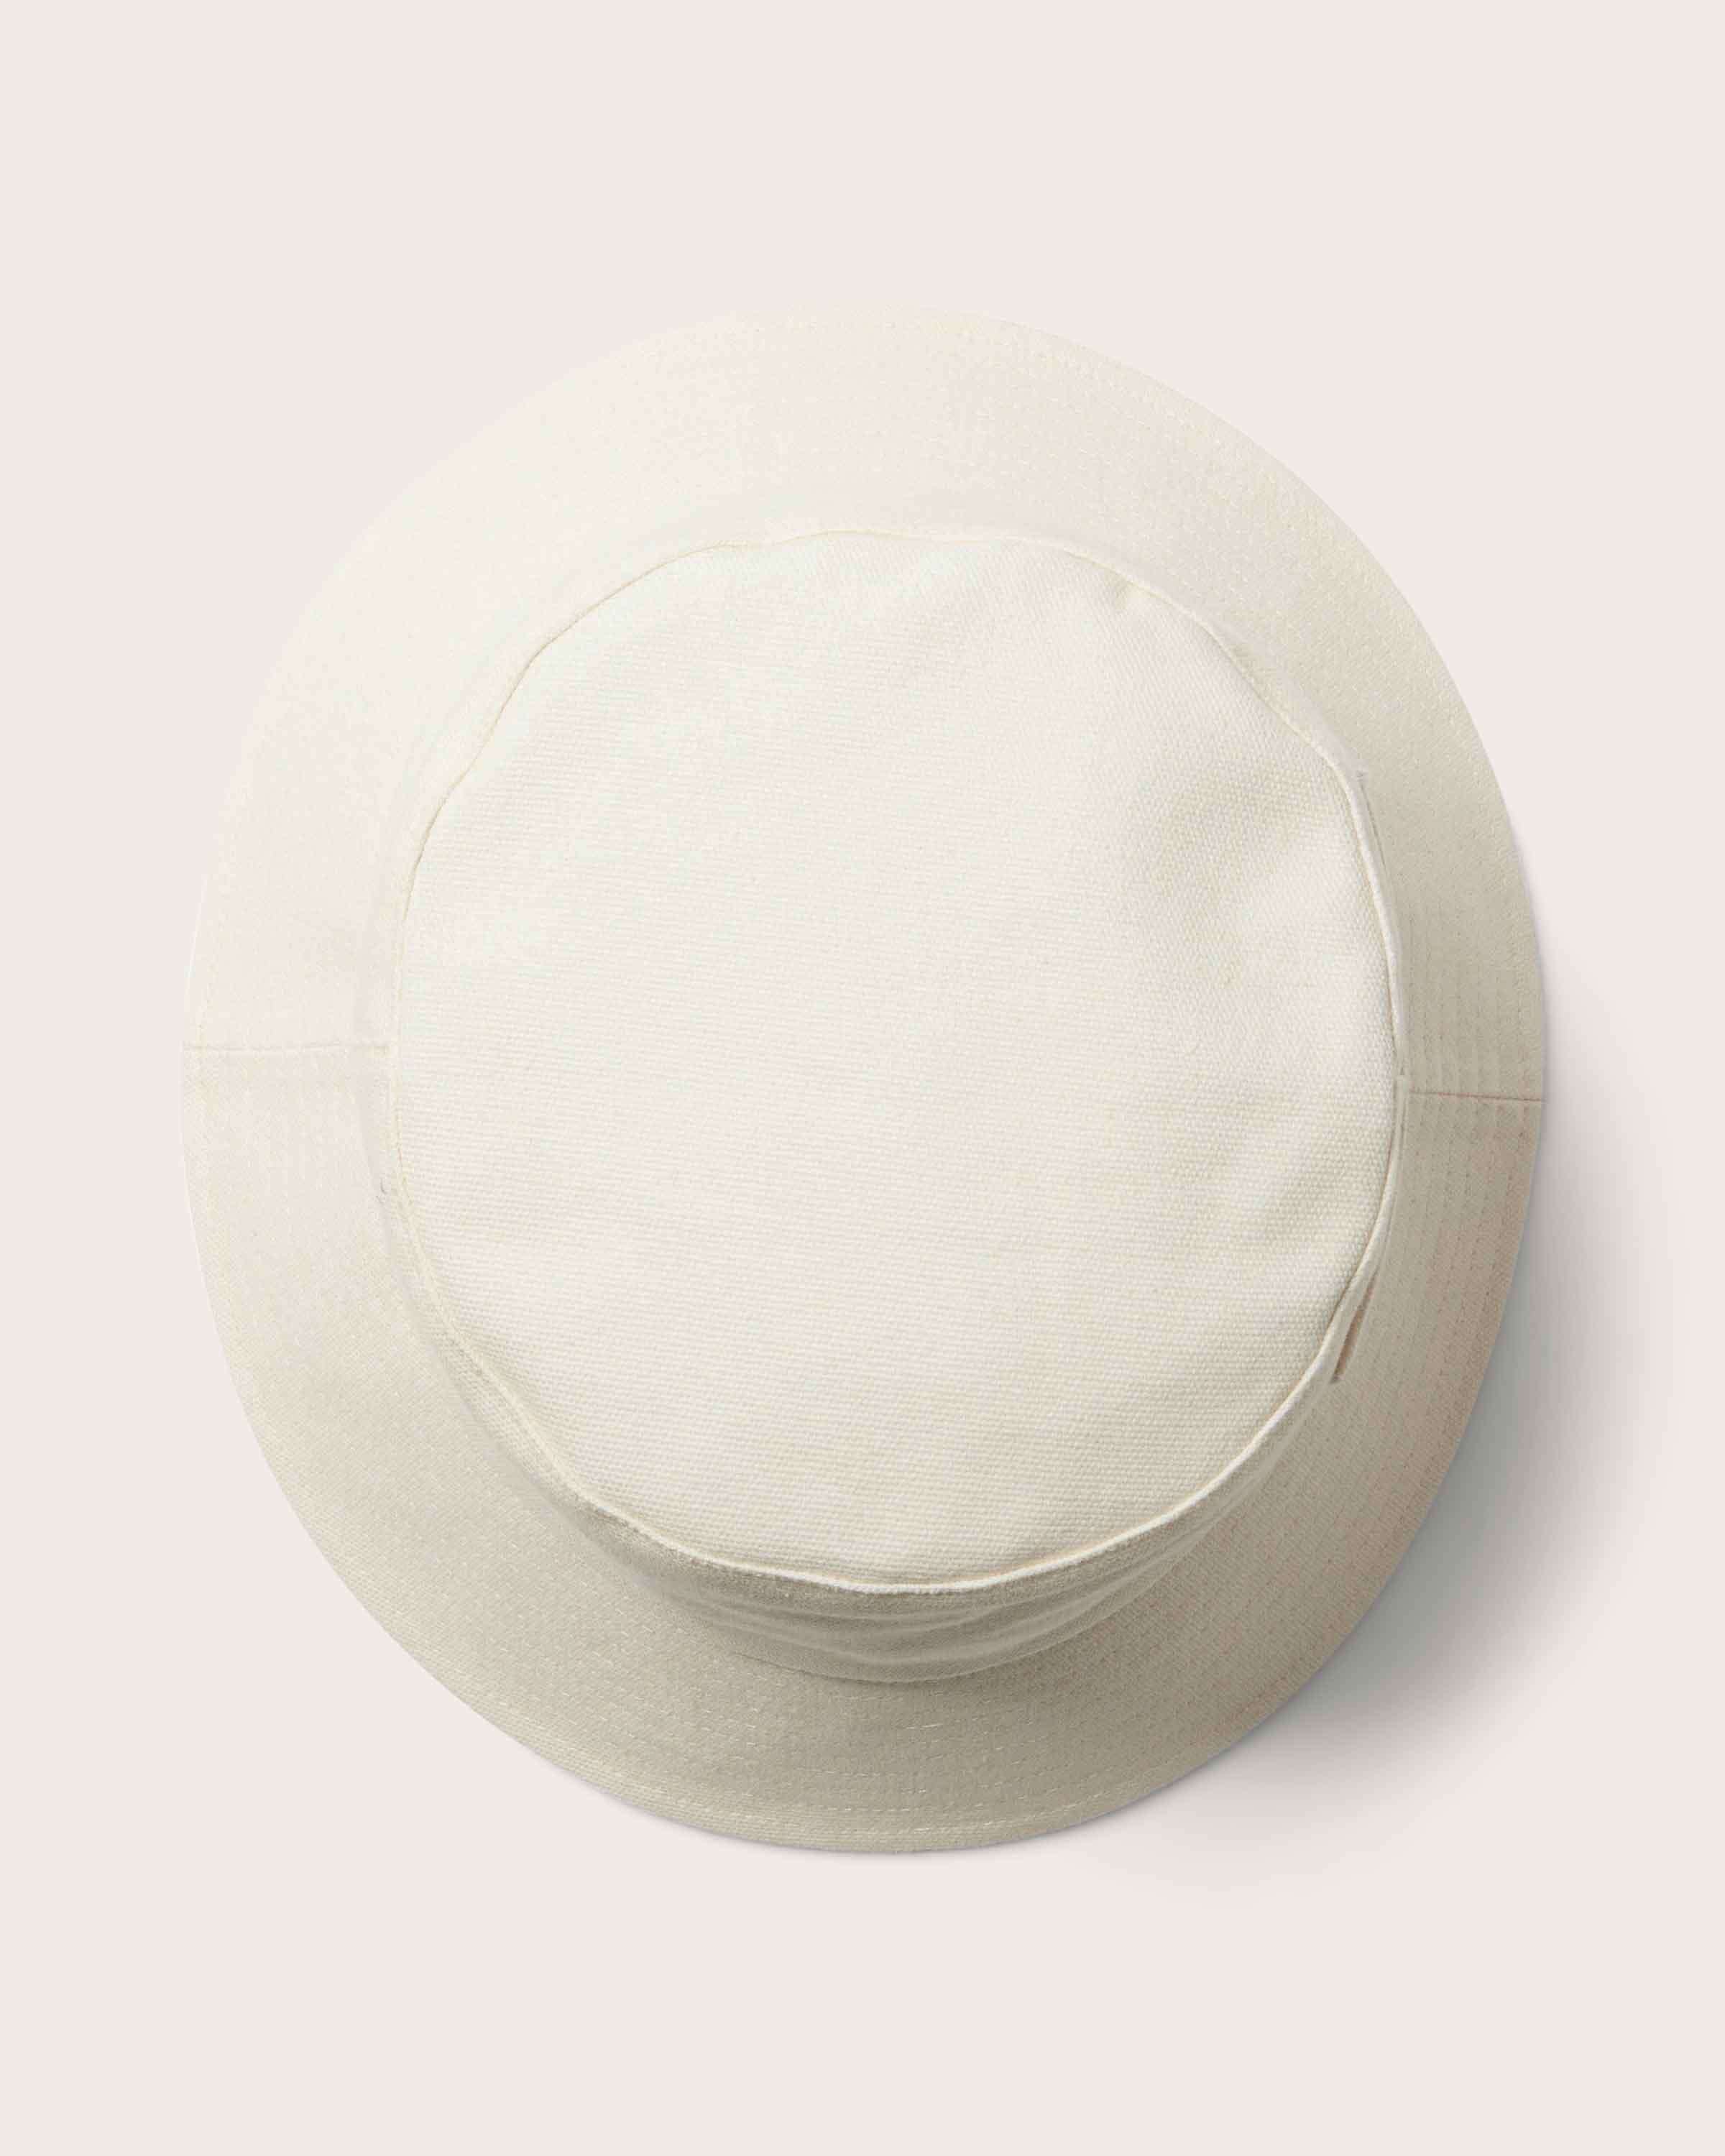 Isle Bucket Hat in Bone - undefined - Hemlock Hat Co. Buckets